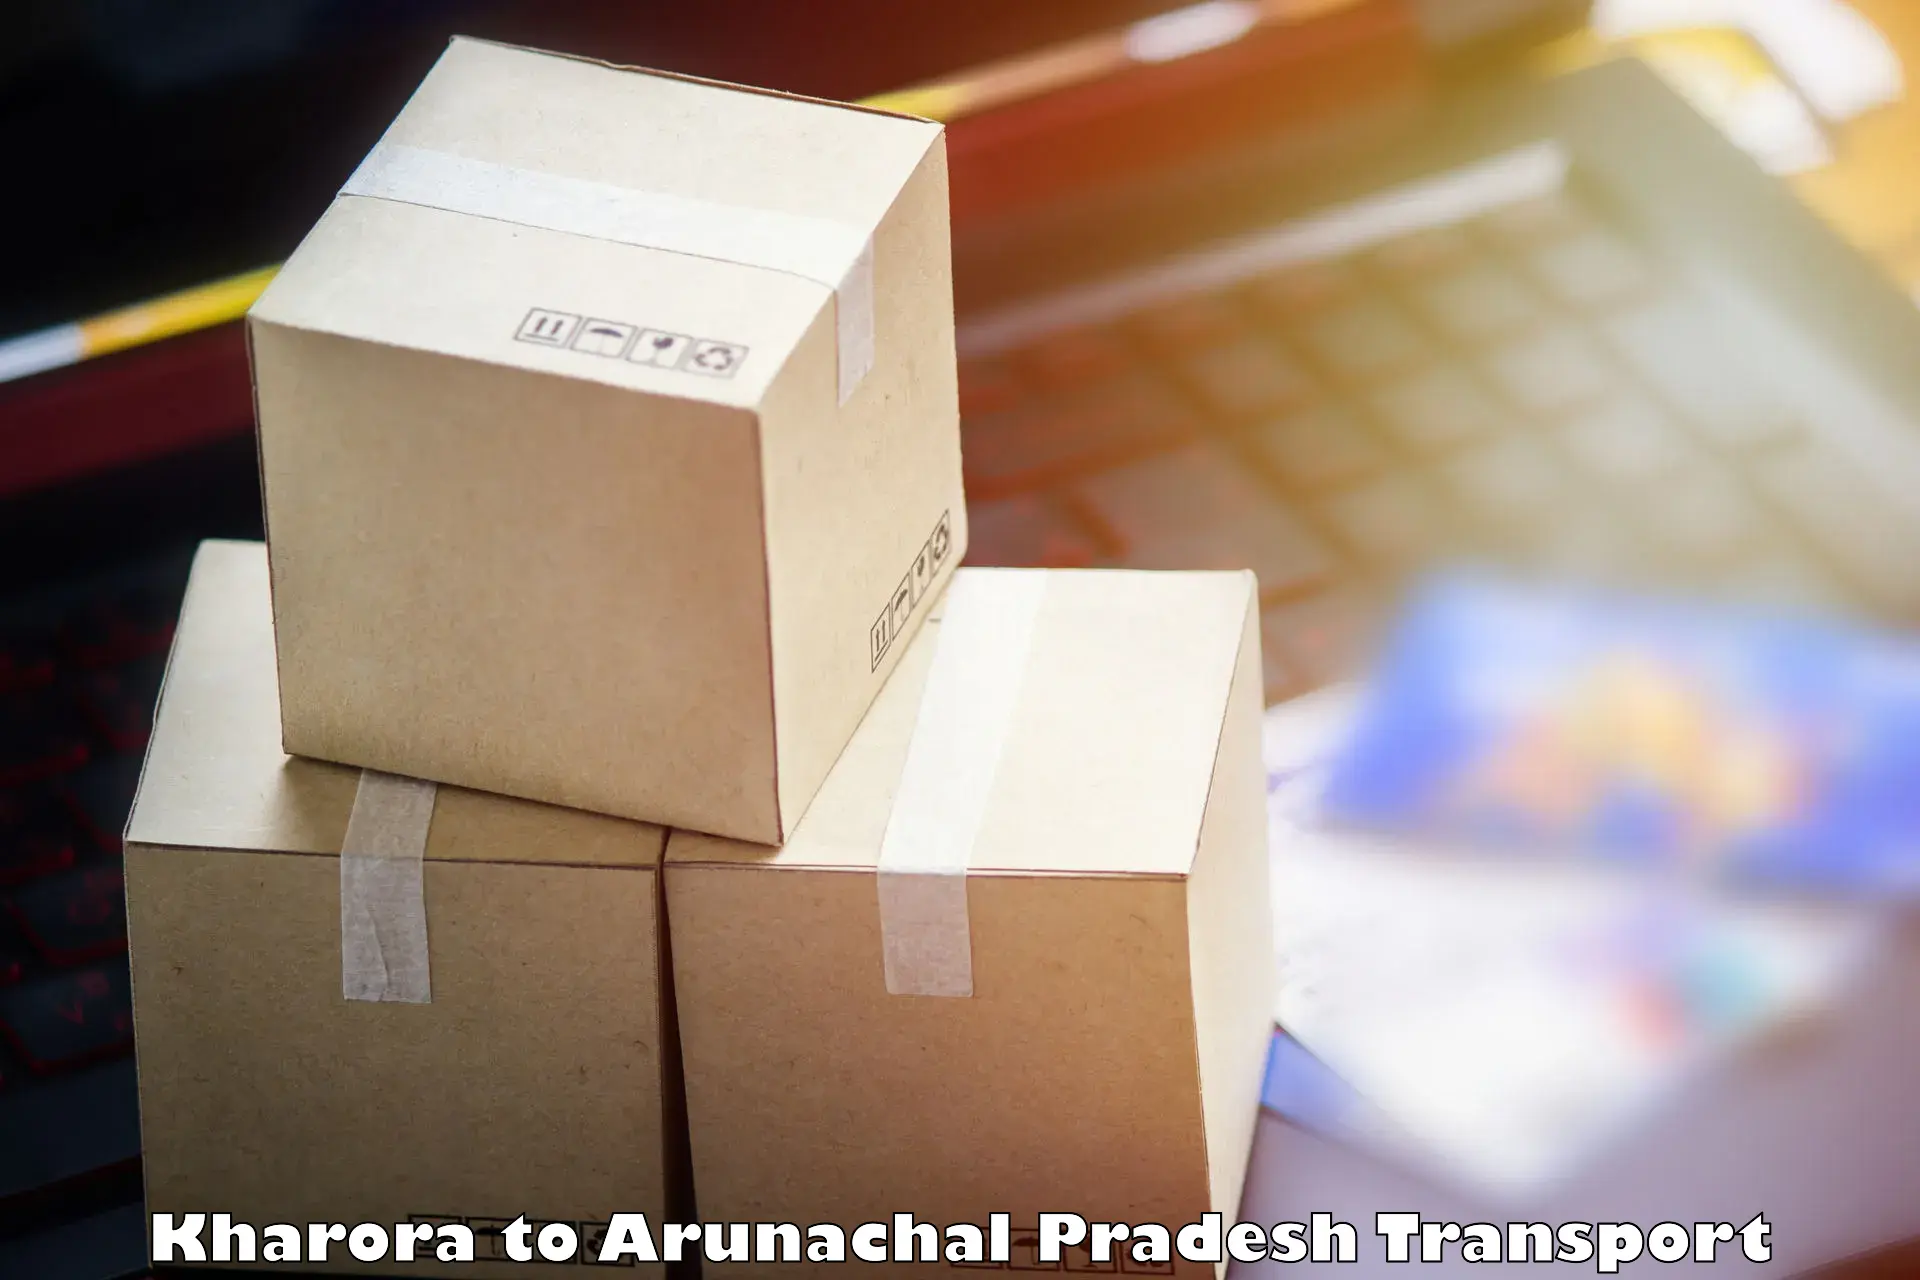 Transport services in Kharora to Arunachal Pradesh